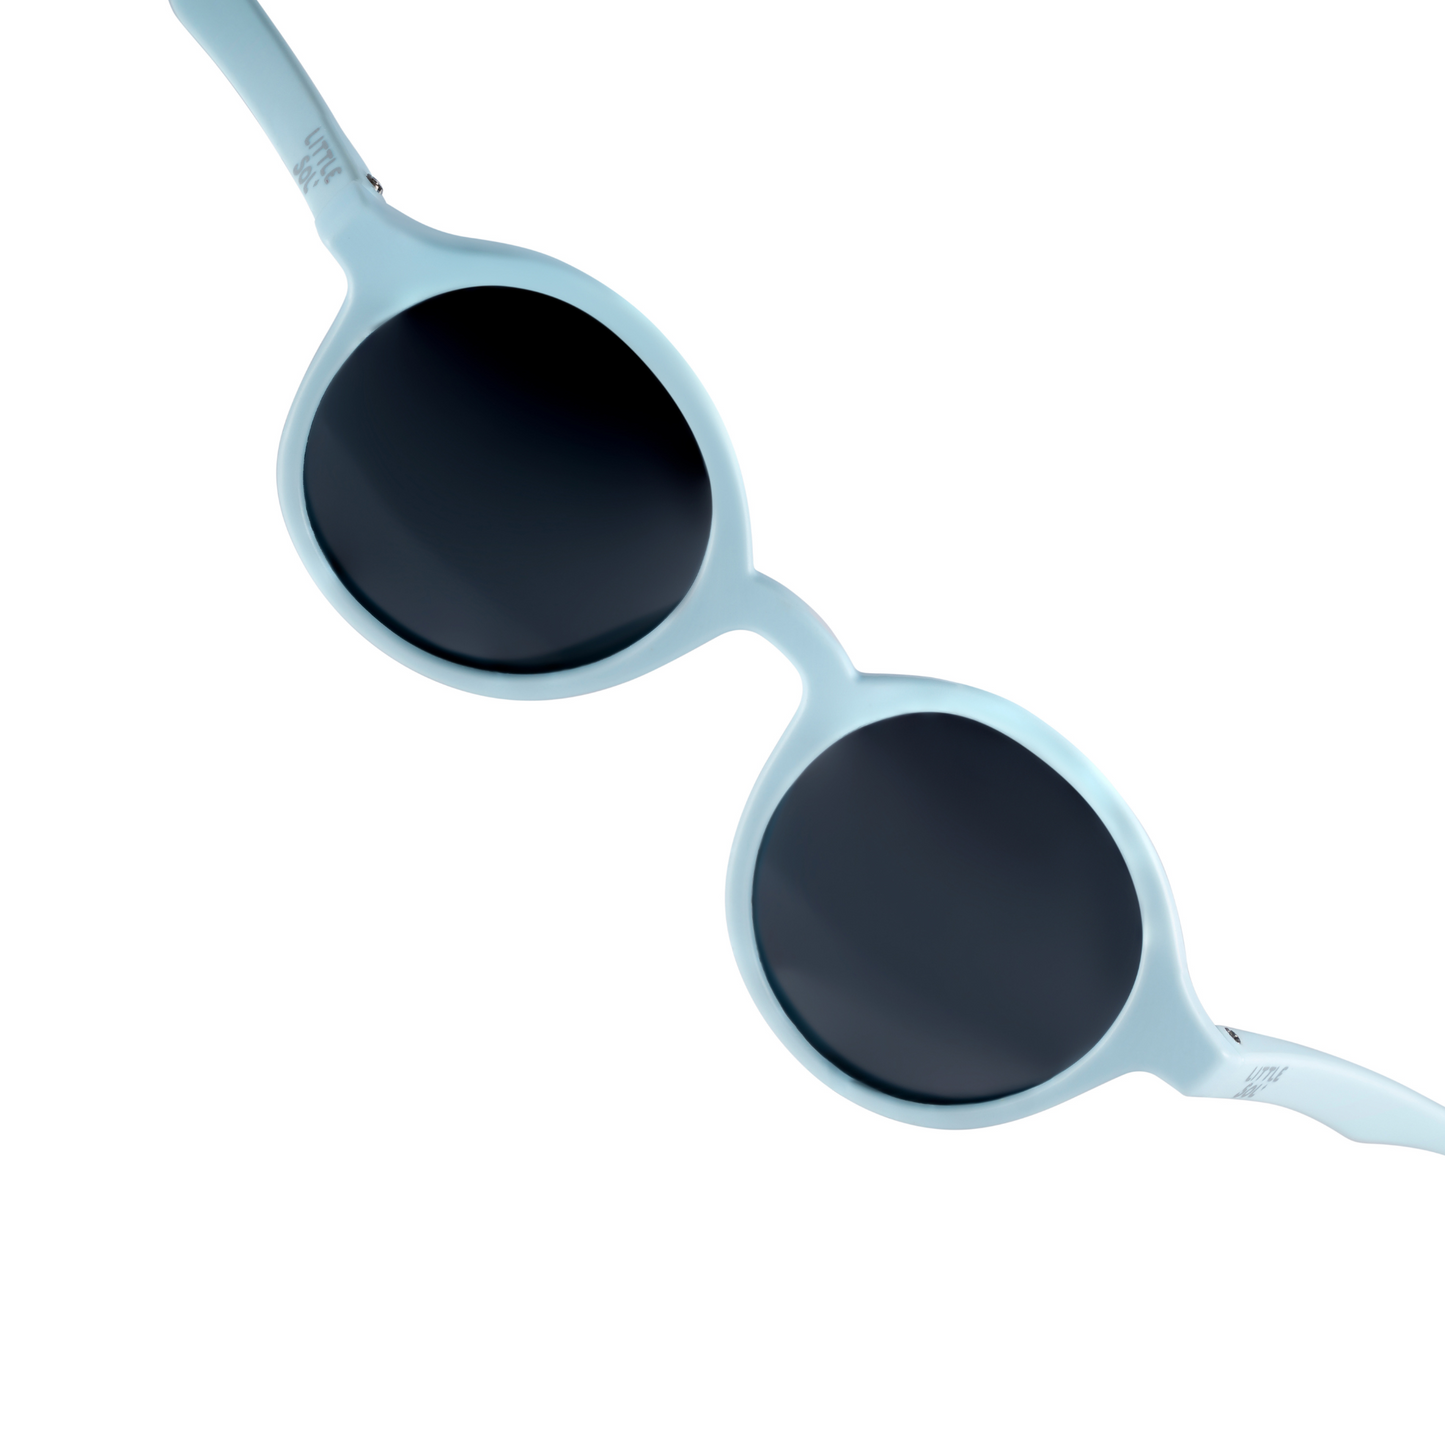 النظارات الشمسية للأطفال الزرقاء